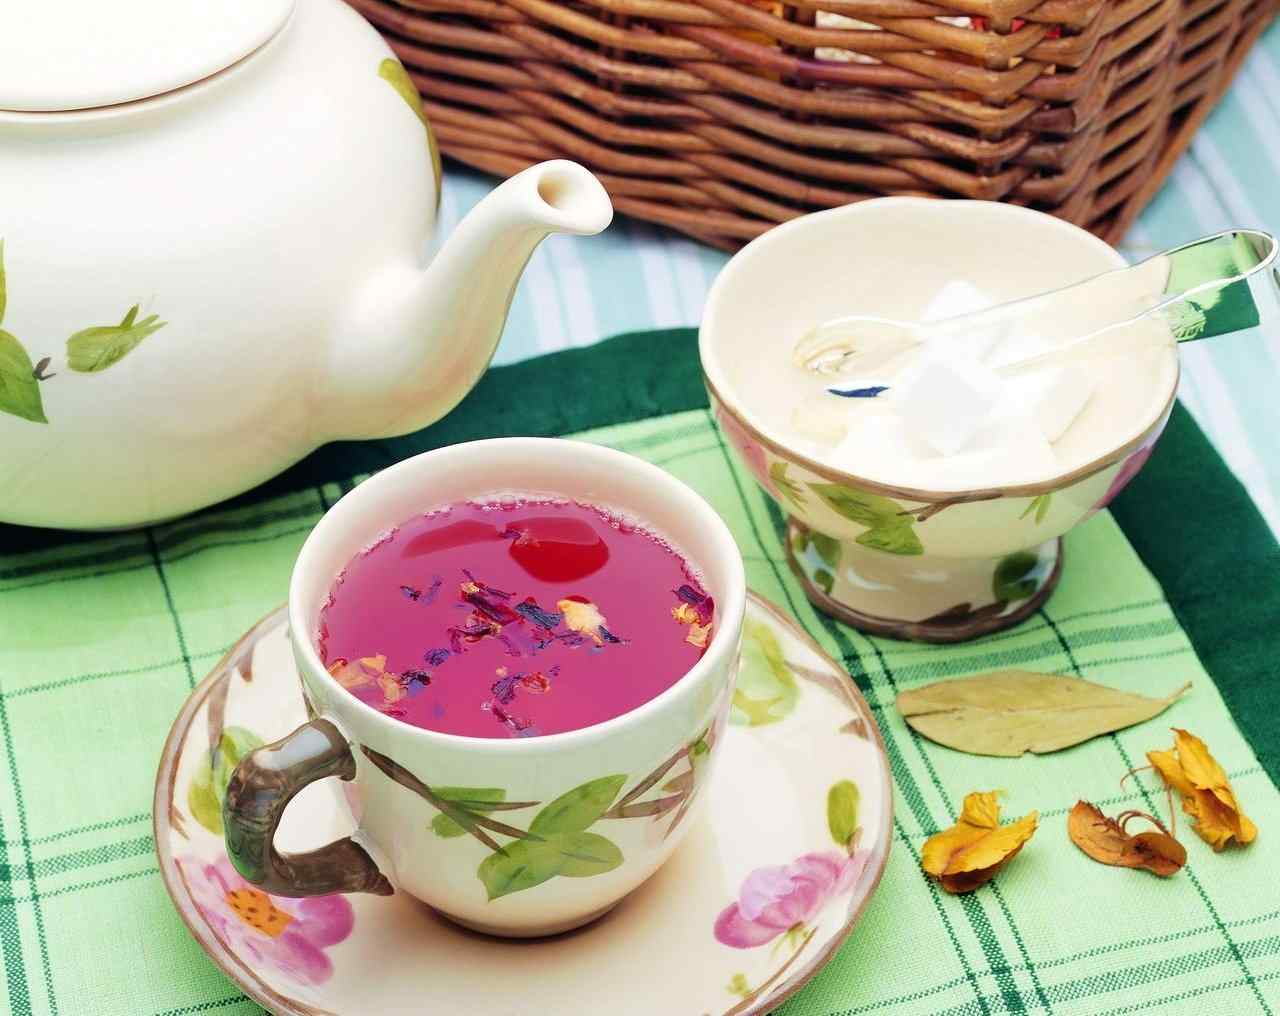   外国茶文化之特色精美茶具高清壁纸4